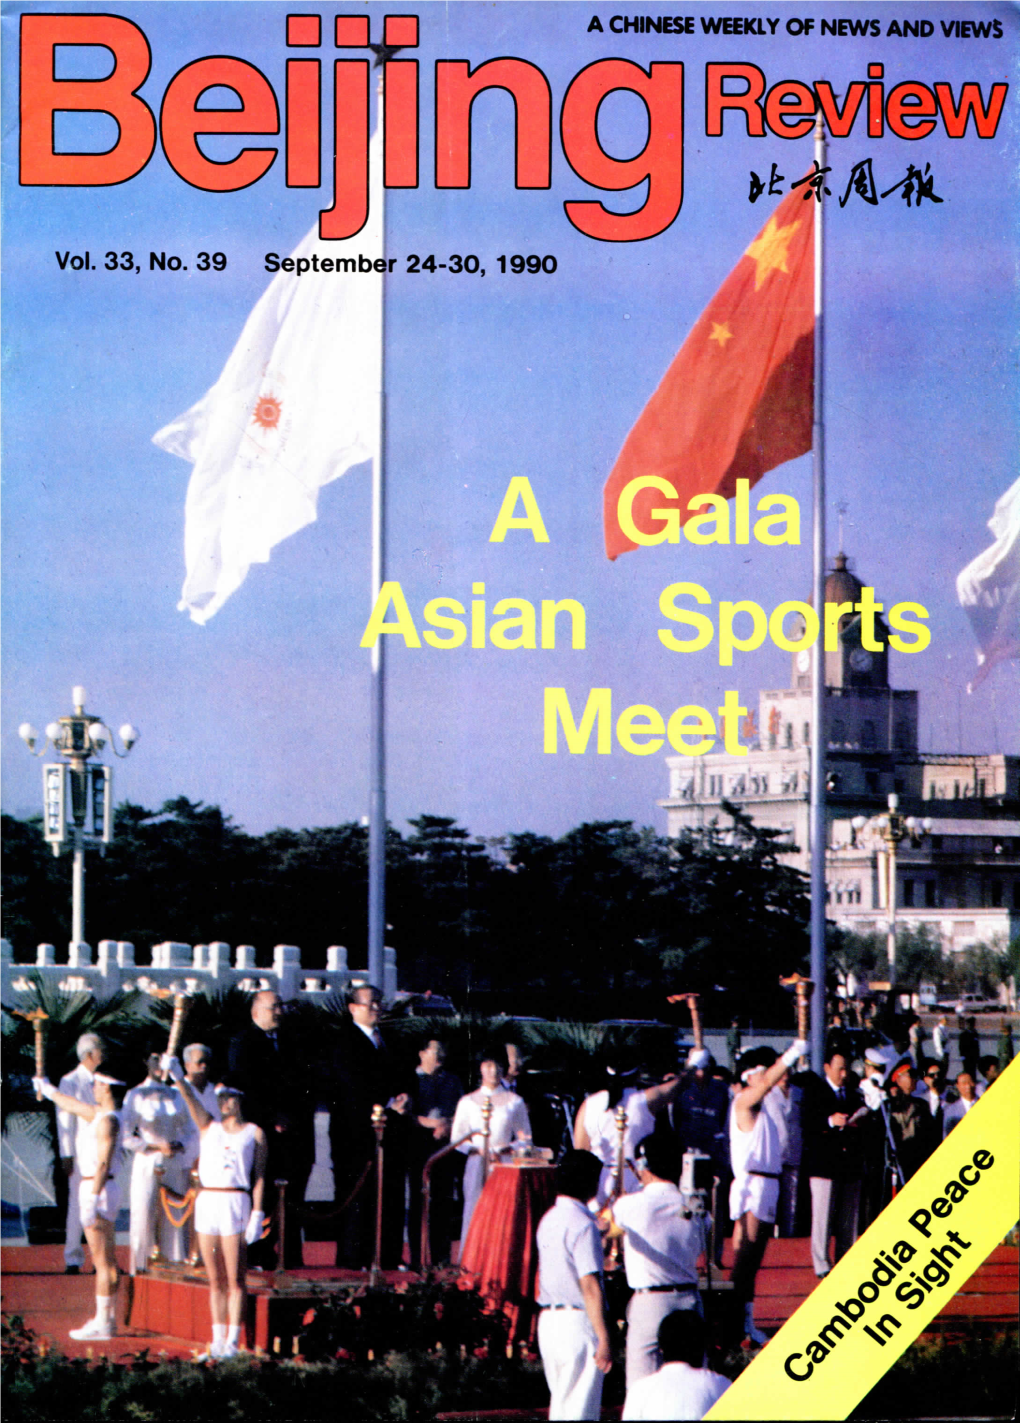 Vol. 33, No. 39 September 24-30, 1990